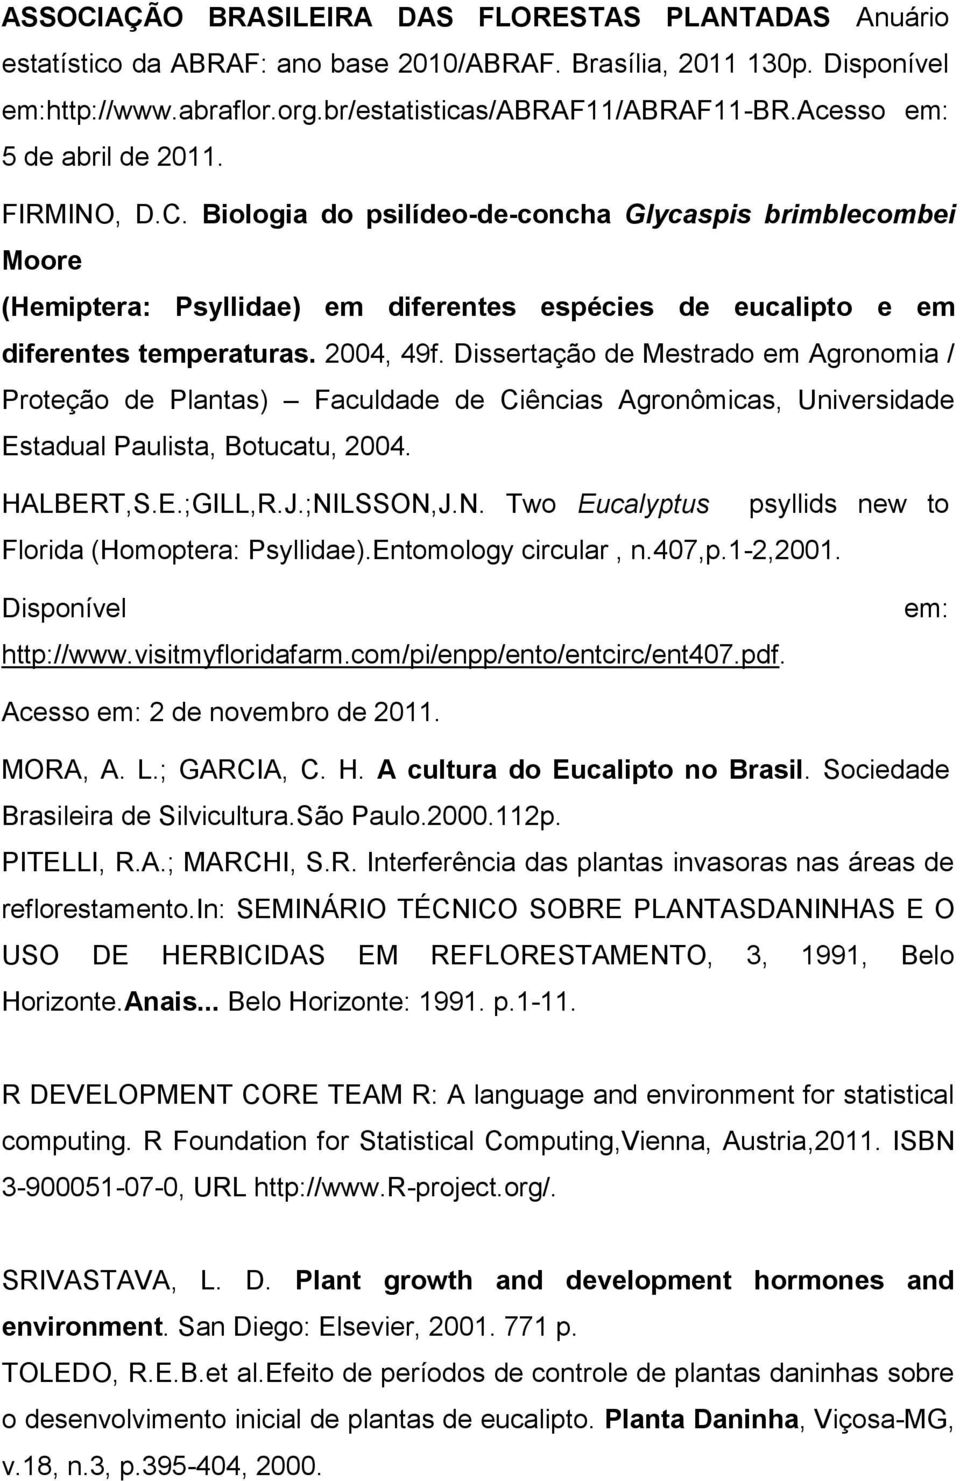 2004, 49f. Dissertação de Mestrado em Agronomia / Proteção de Plantas) Faculdade de Ciências Agronômicas, Universidade Estadual Paulista, Botucatu, 2004. HALBERT,S.E.;GILL,R.J.;NI